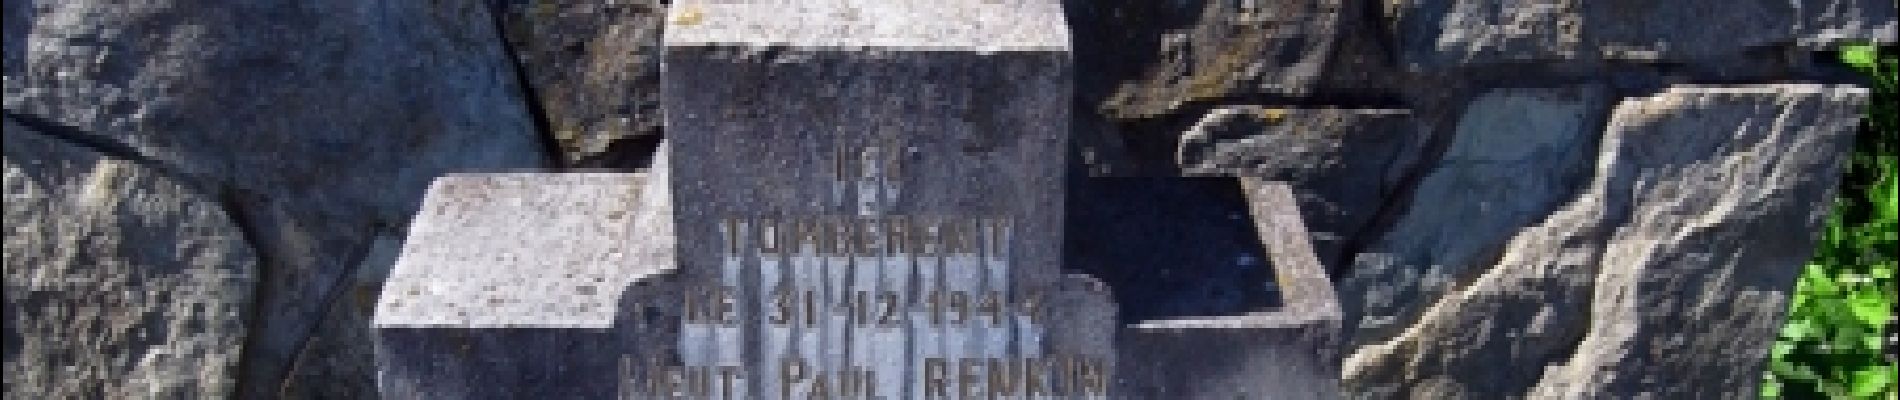 Point d'intérêt Tellin - Monument de la Croix Renkin - Photo